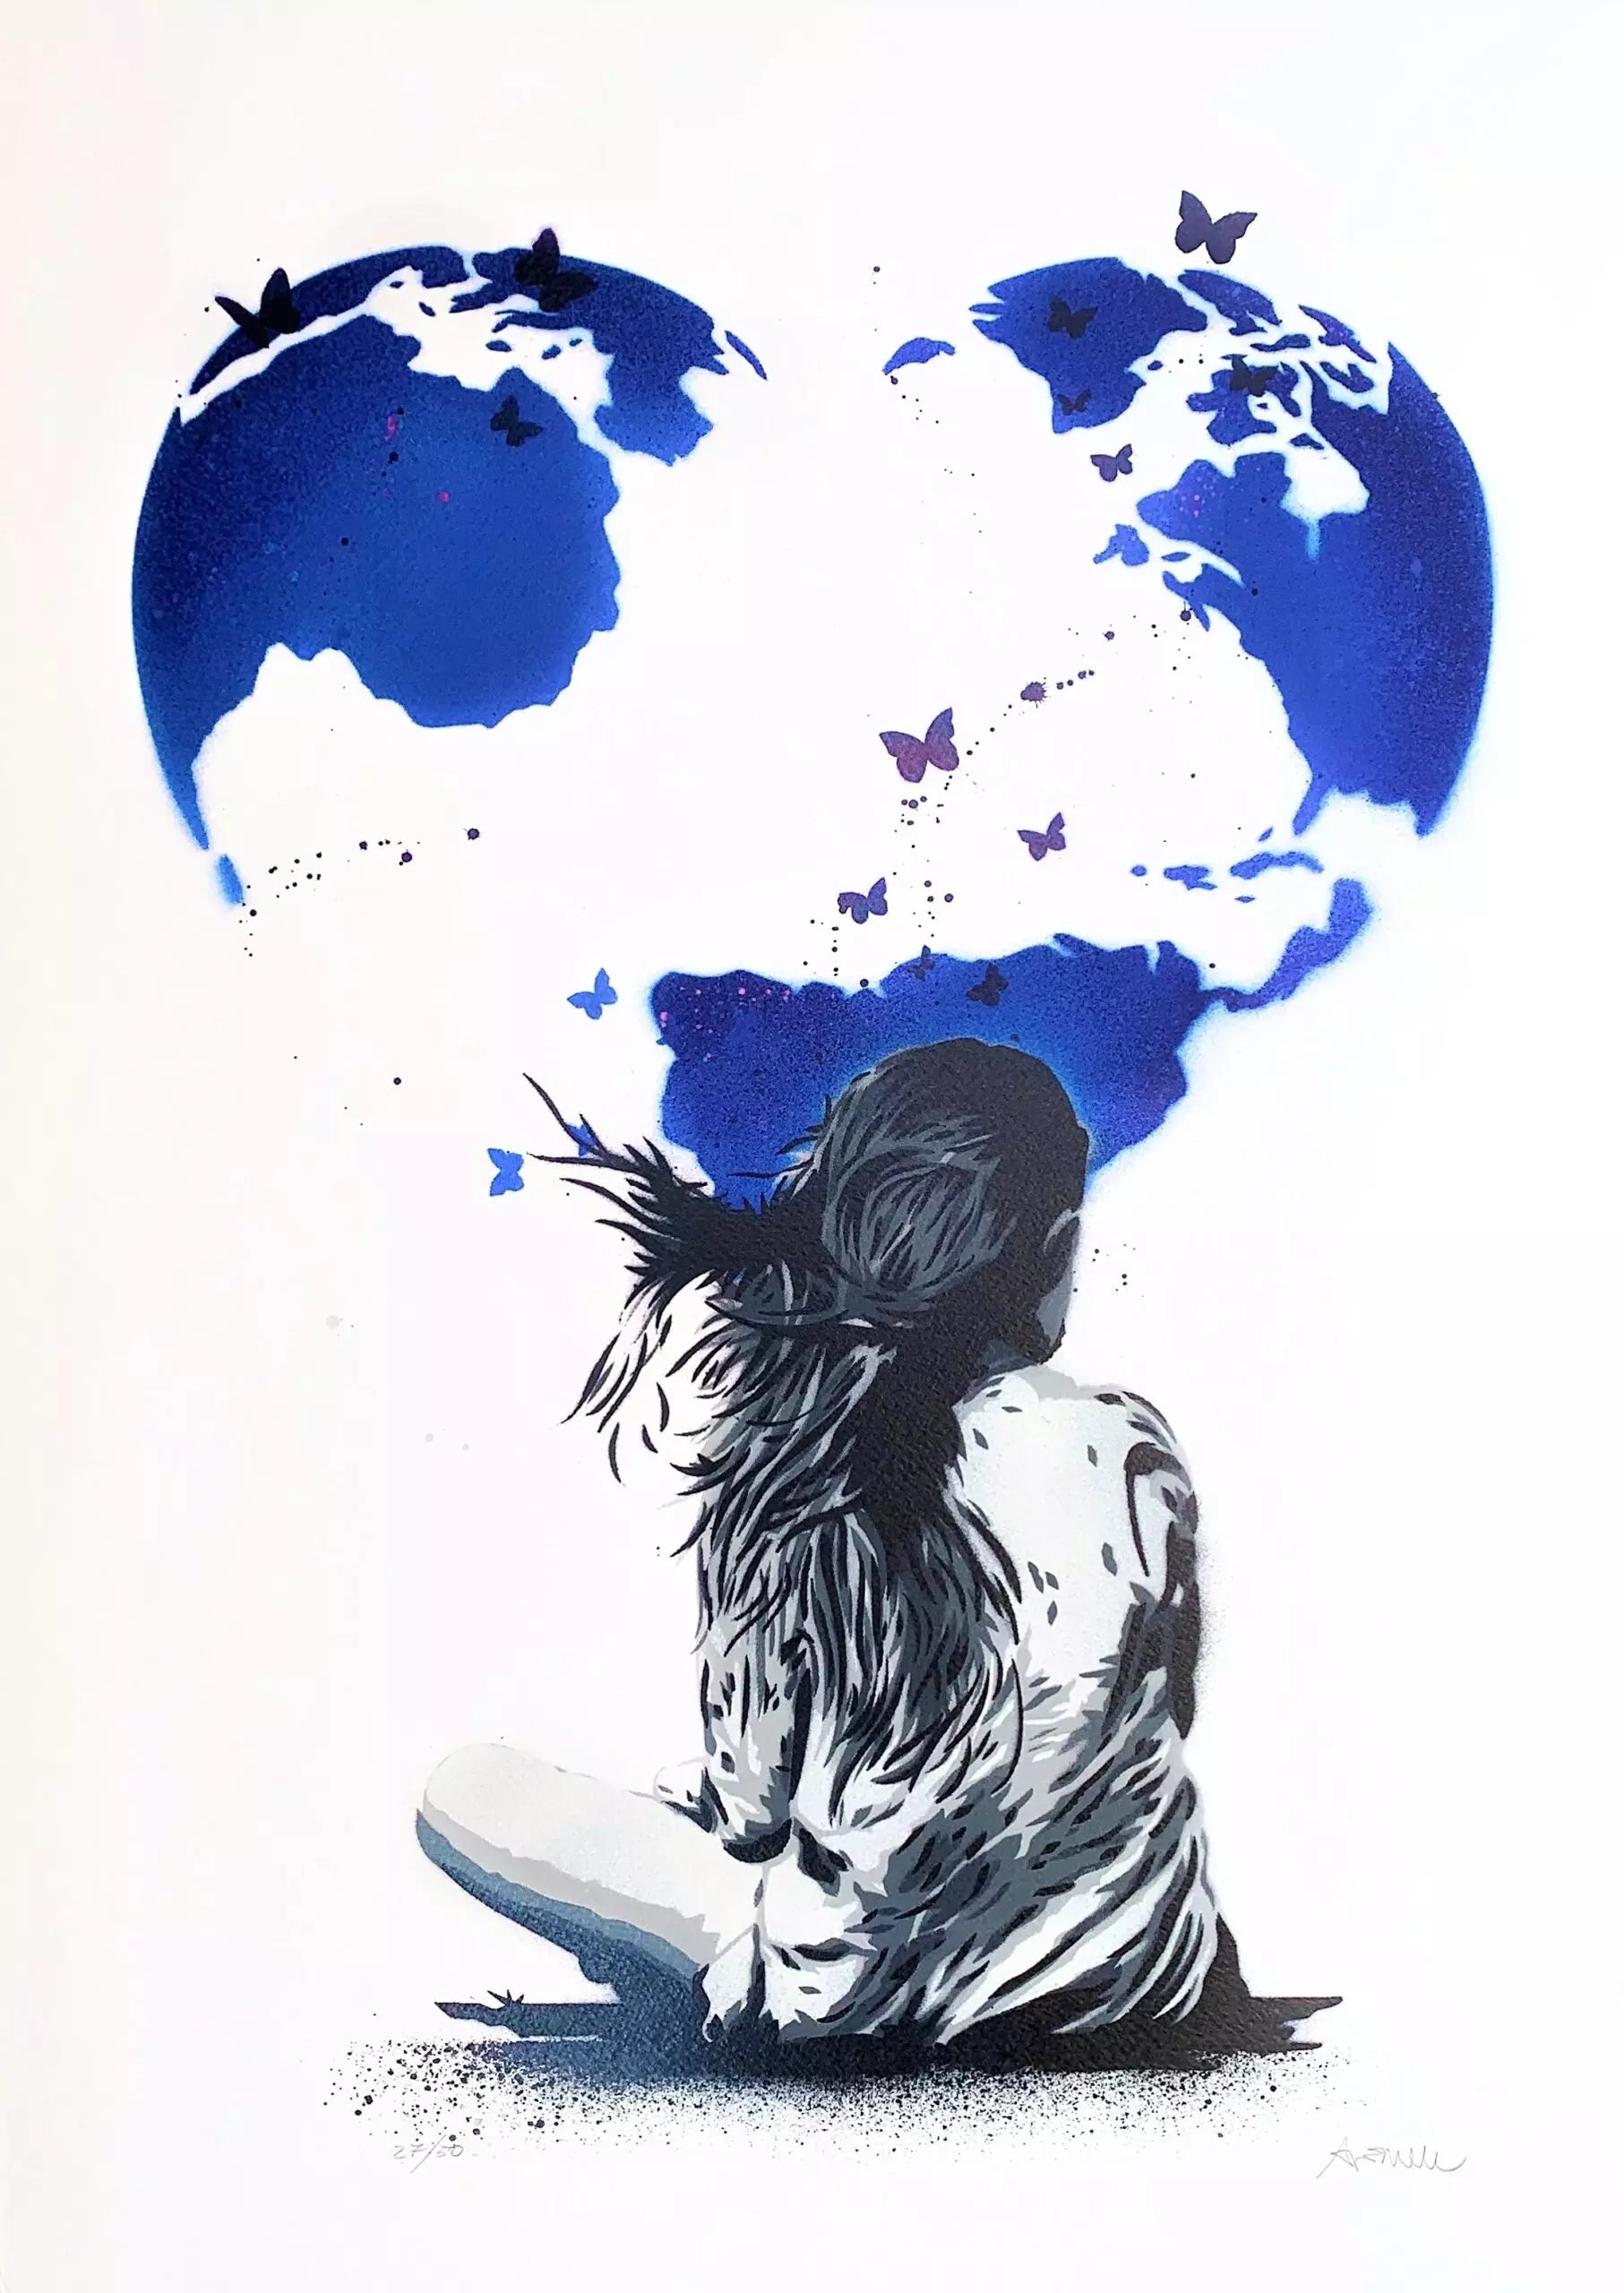 Dream Blue Edition Big di Alessio-B. Stampa giclée stampa giclée su carta 320 gsm edizione limitata rappresentante una bambina seduta che osserva una grande cuore blu  | Cd Studio d'Arte